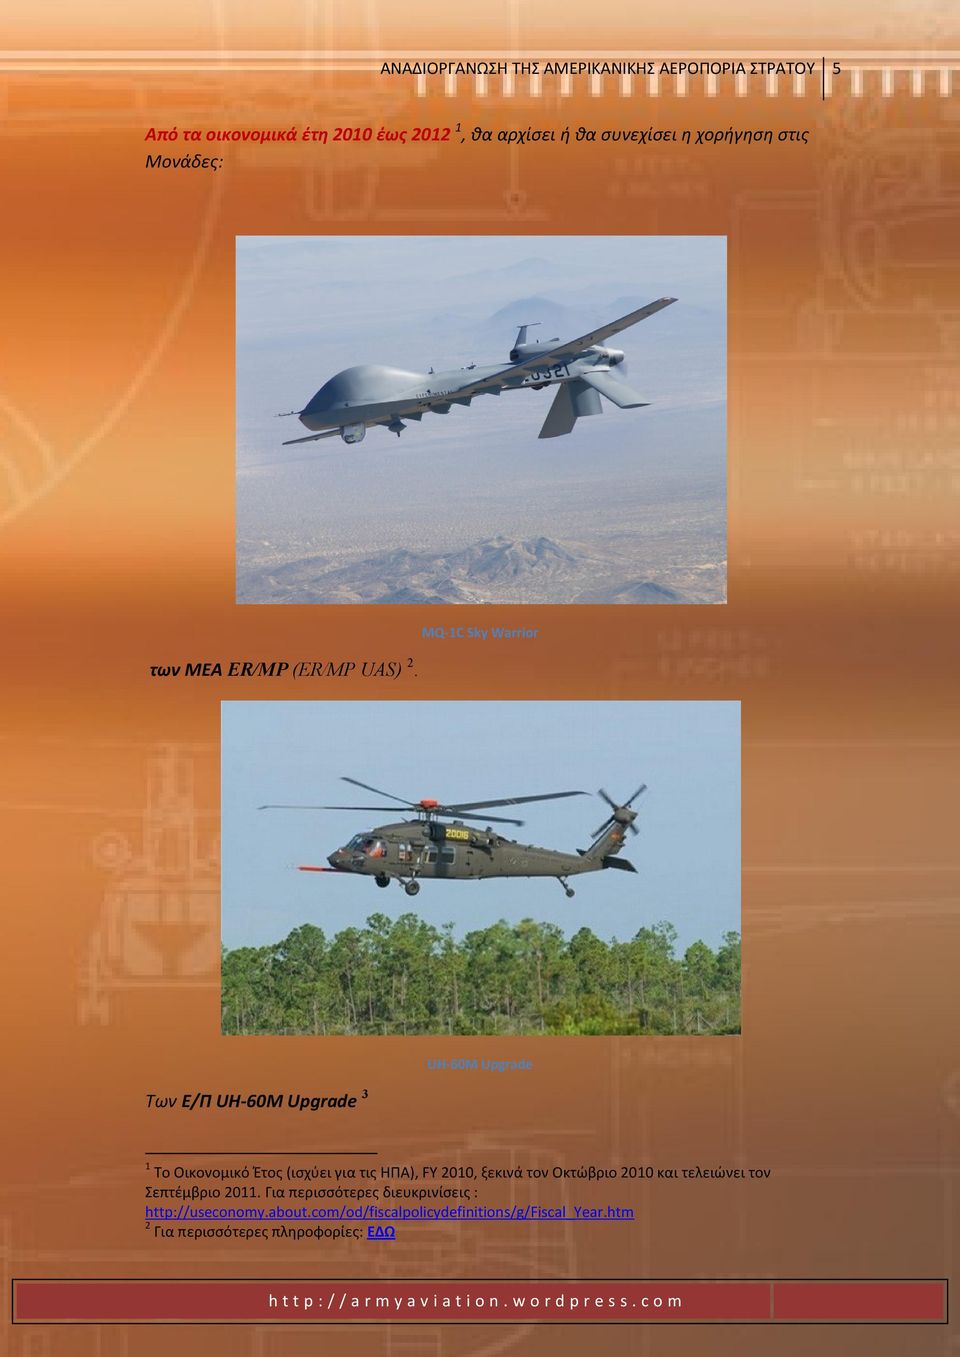 UH-60M Upgrade Των Ε/Π UH-60M Upgrade 3 1 Σο Οικονομικό Ζτοσ (ιςχφει για τισ ΗΠΑ), FY 2010, ξεκινά τον Οκτϊβριο 2010 και